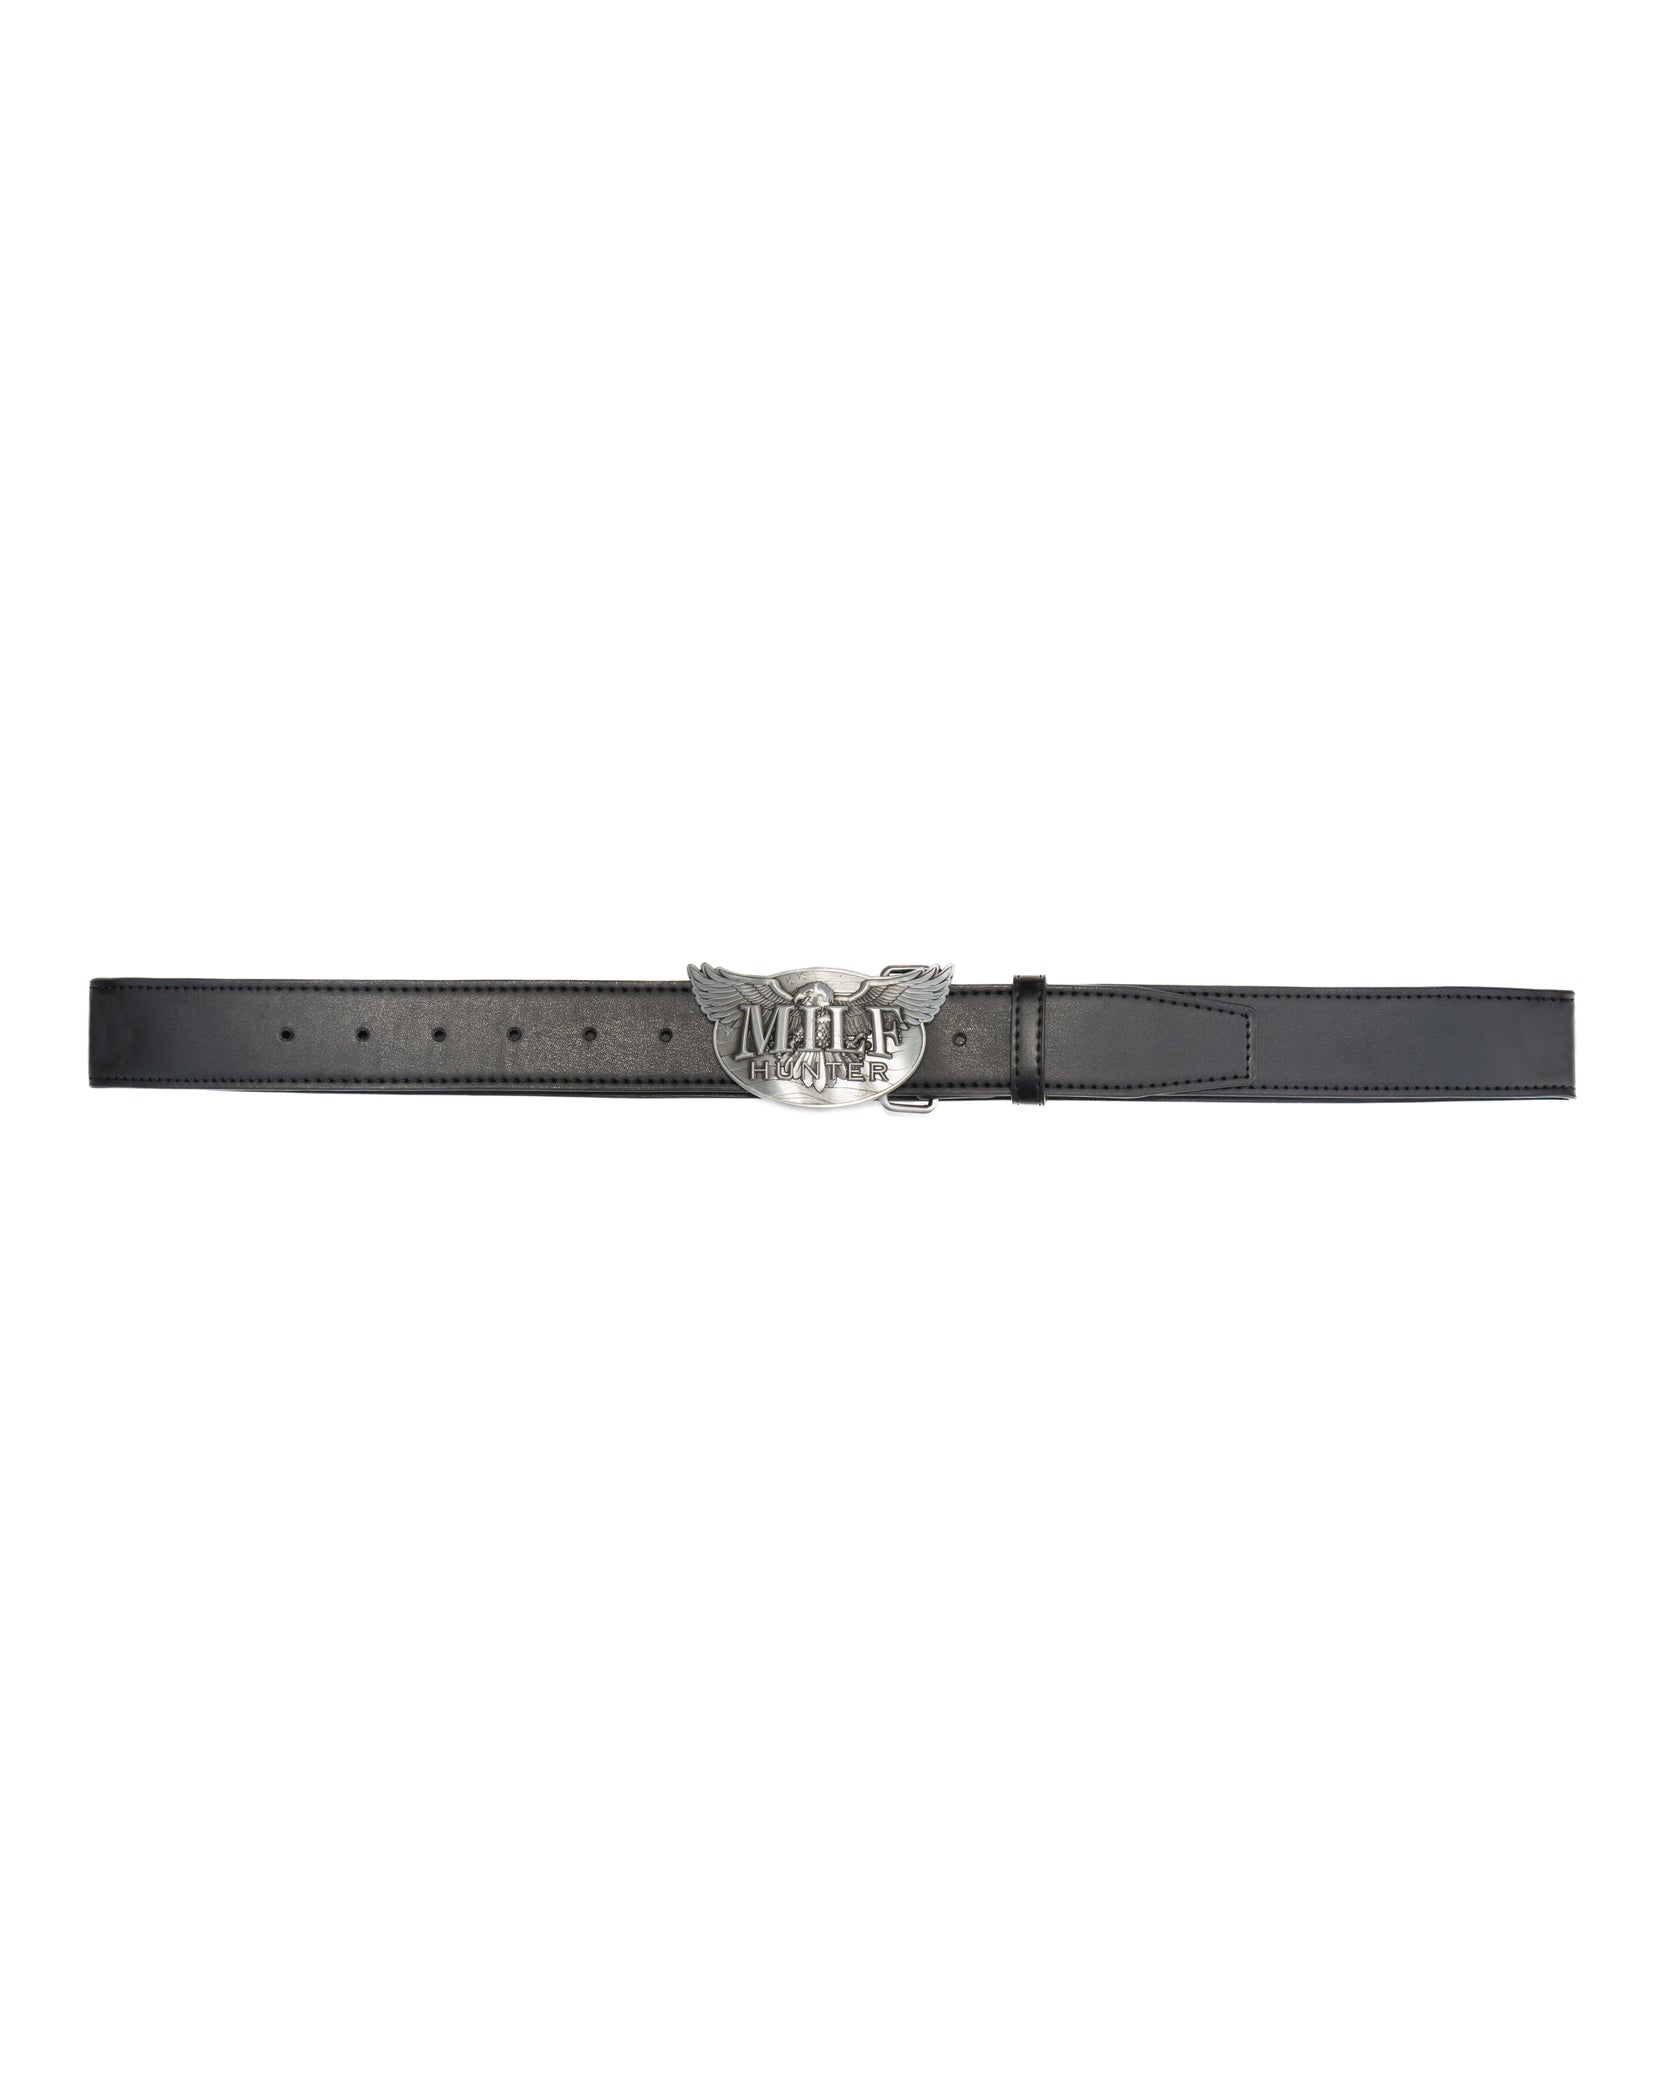 MILF Hunter Leather Belt - Black / Silver